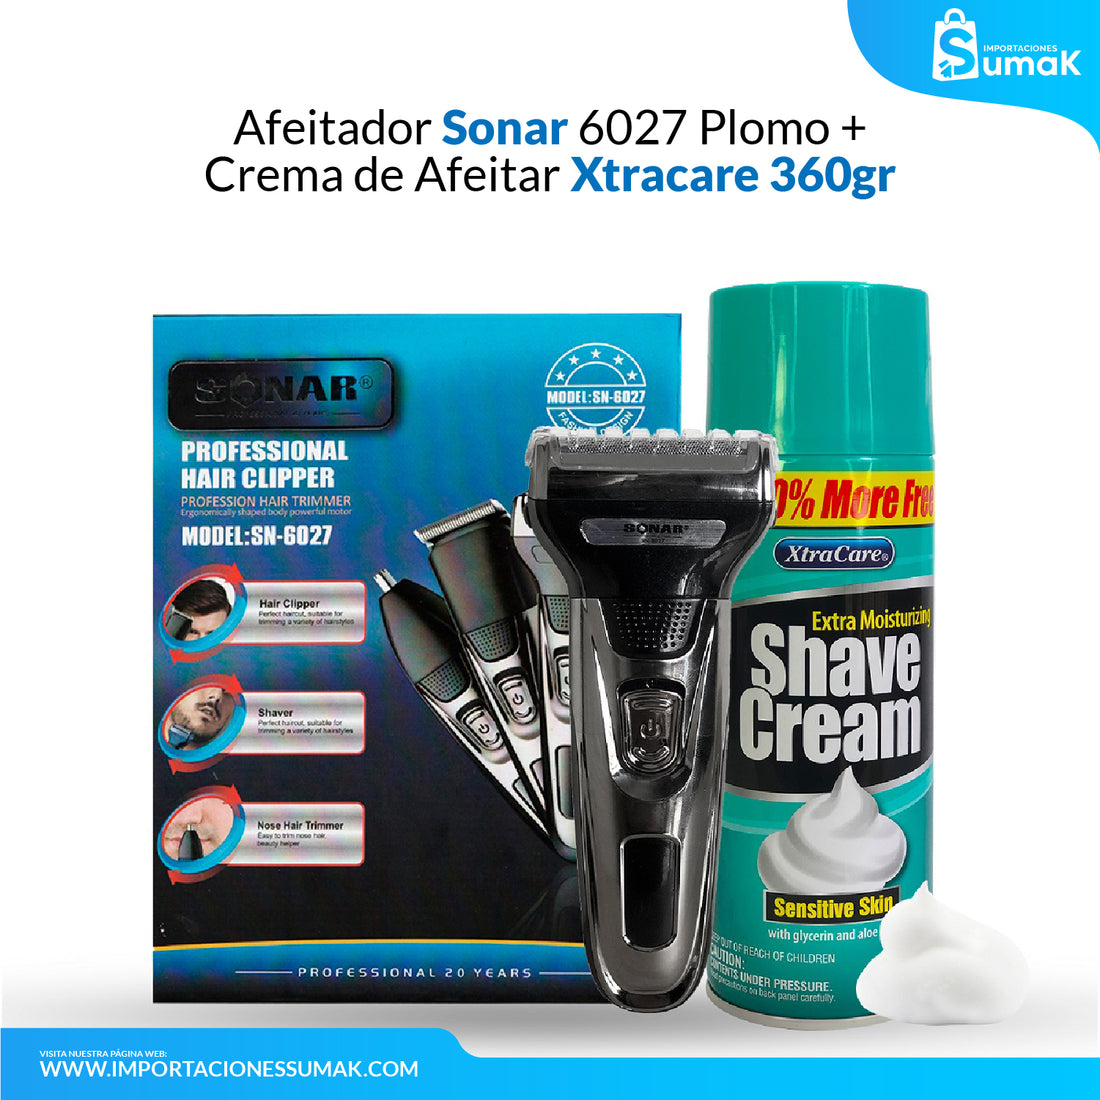 Afeitador Sonar 6027 Plomo + Crema de Afeitar xtracare 360 gr - para piel sensible